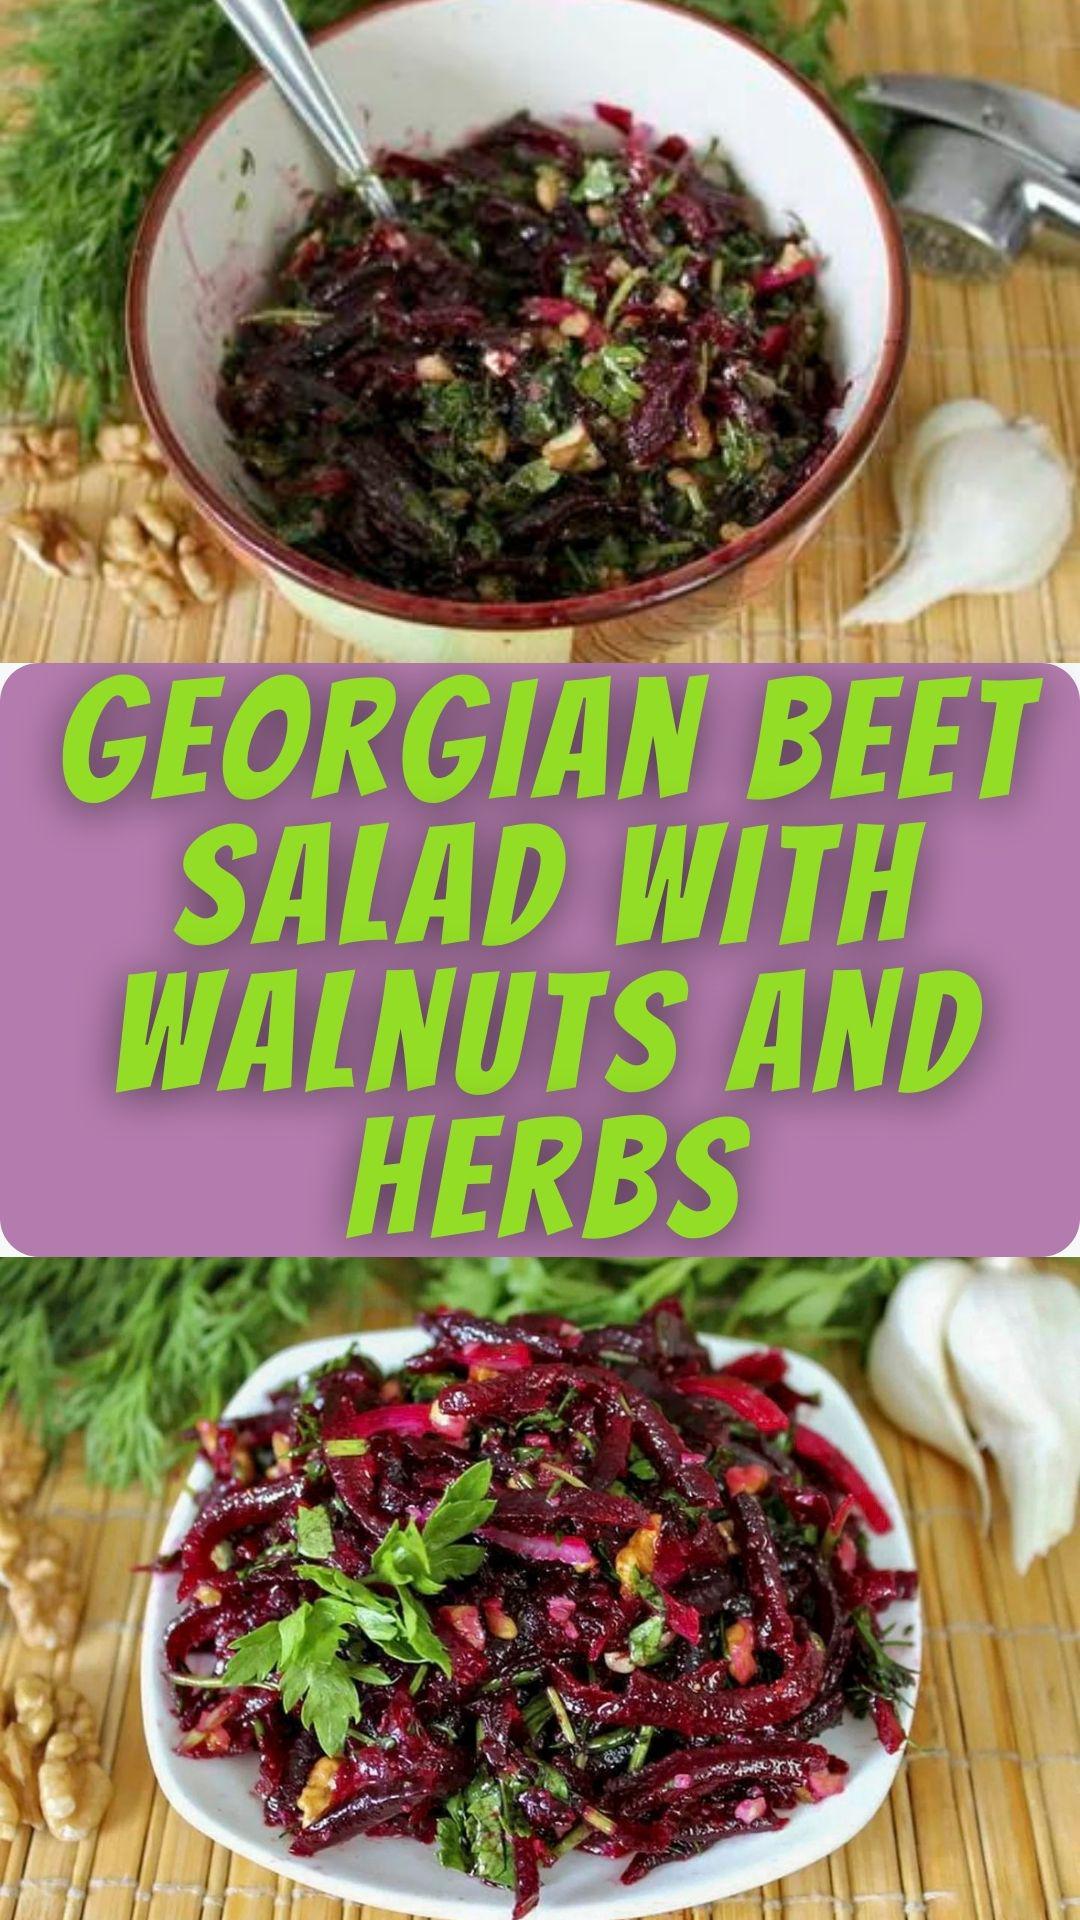 Georgian Beet Salad with Walnuts and Herbs